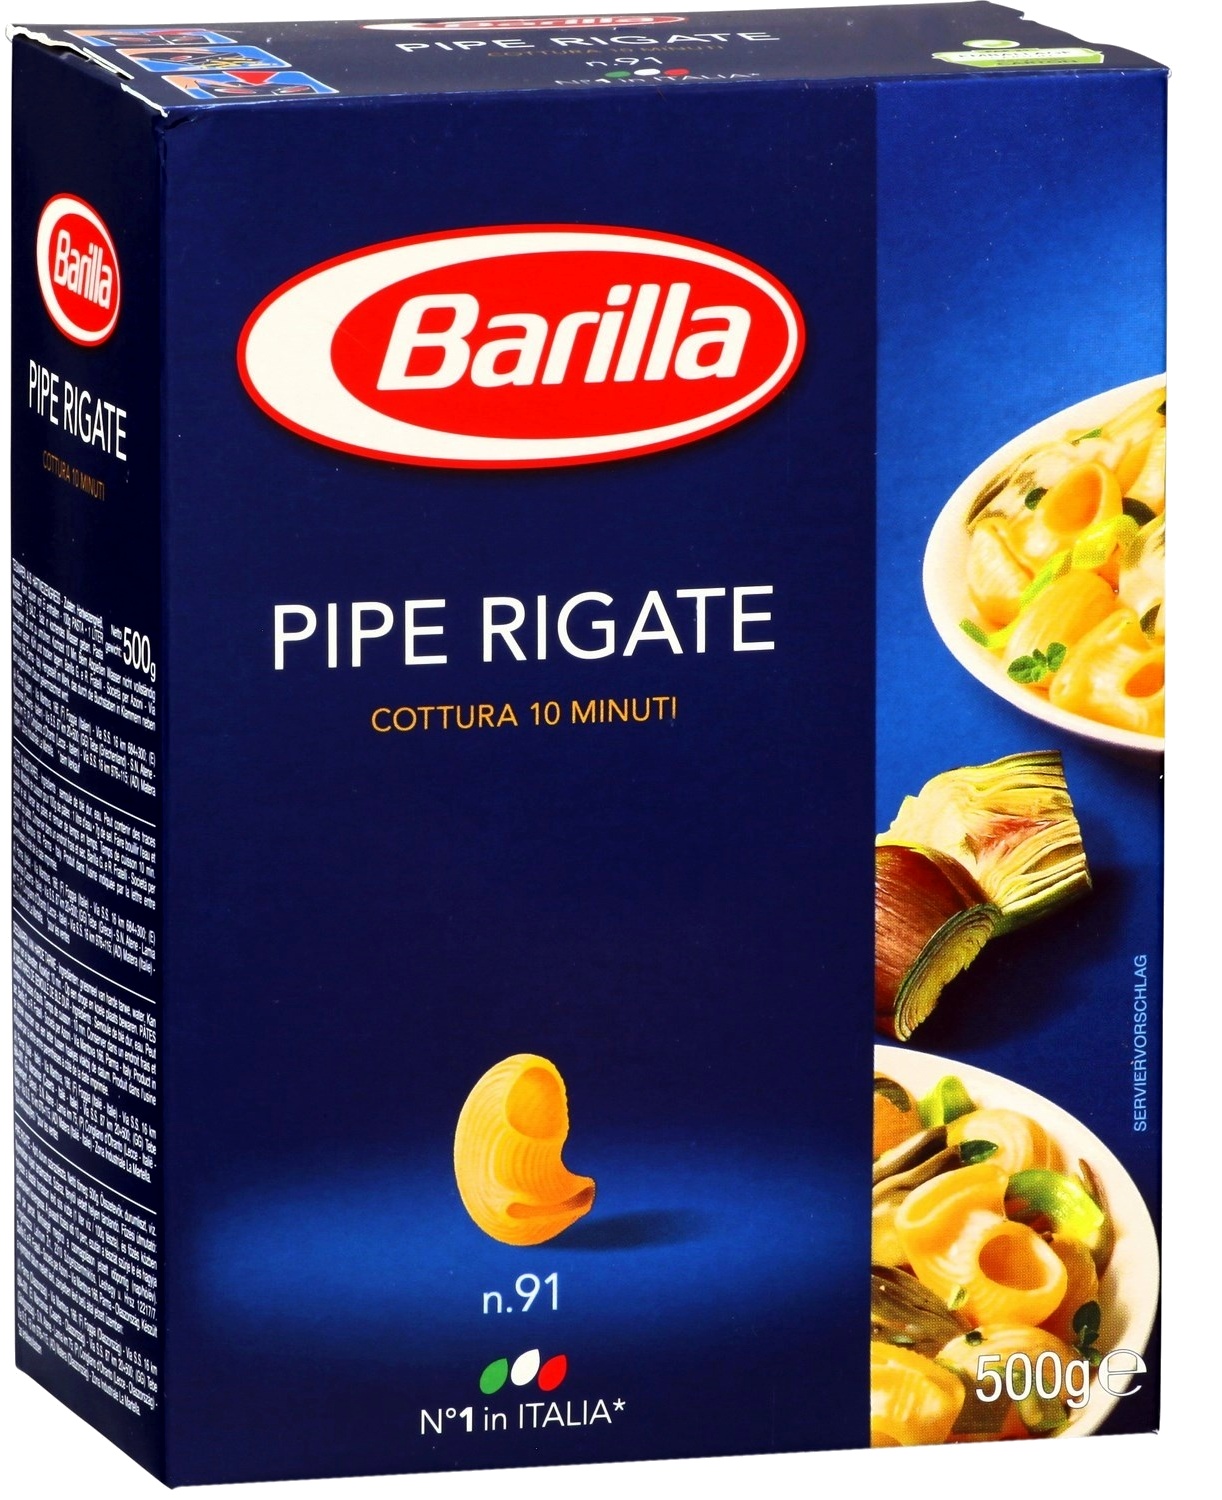 Pipe Rigate n.91, Barilla